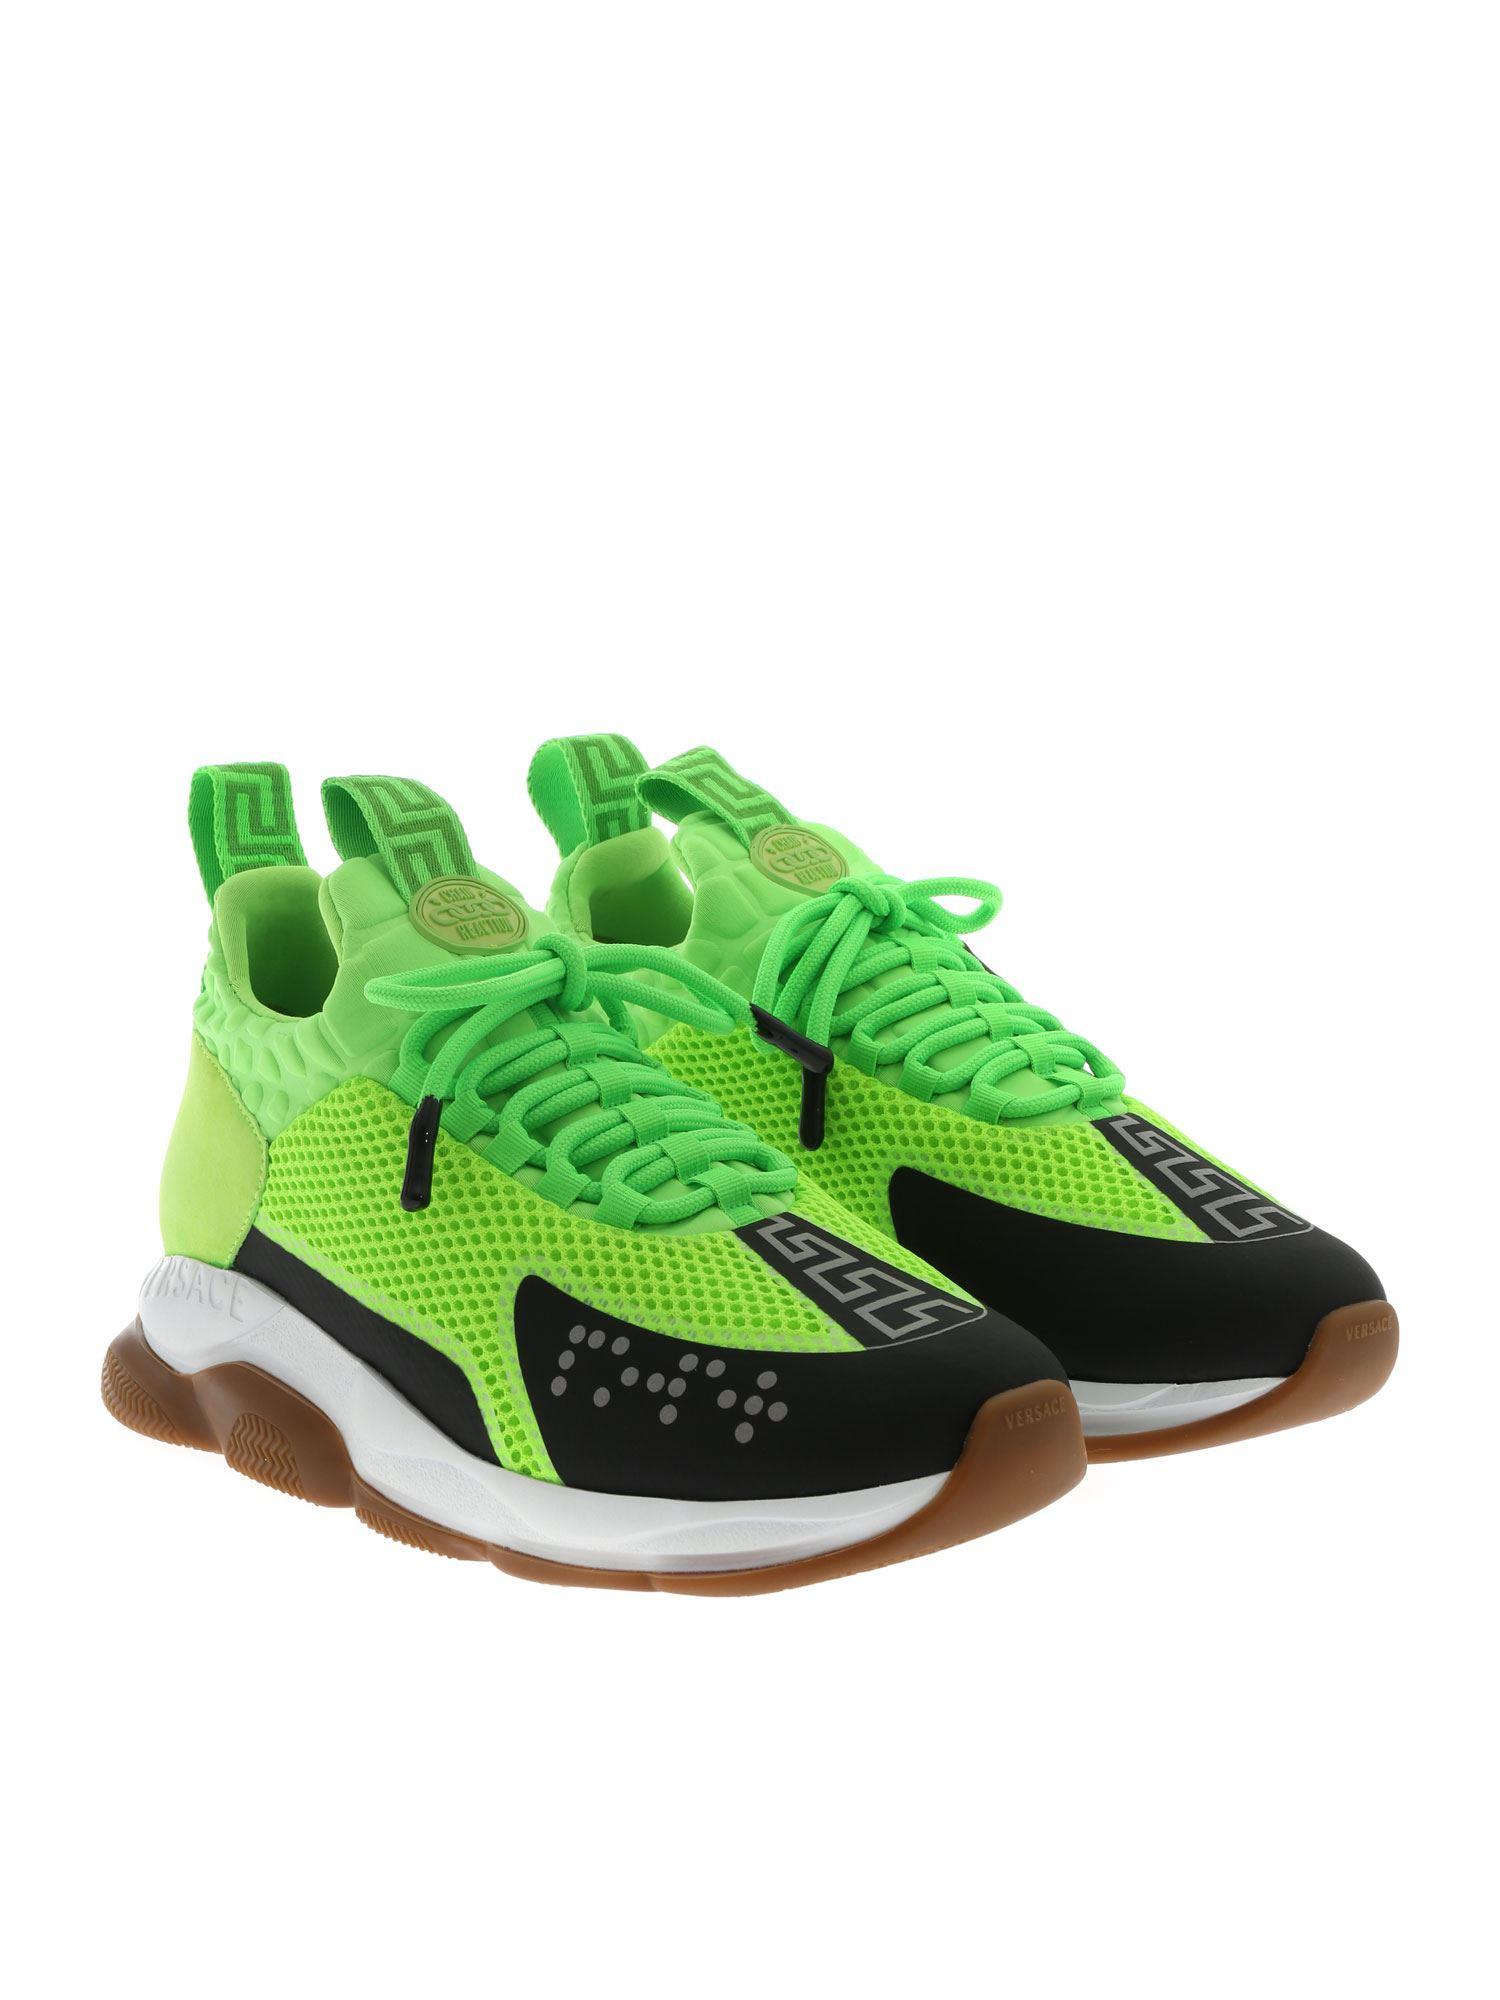 versace sneakers green